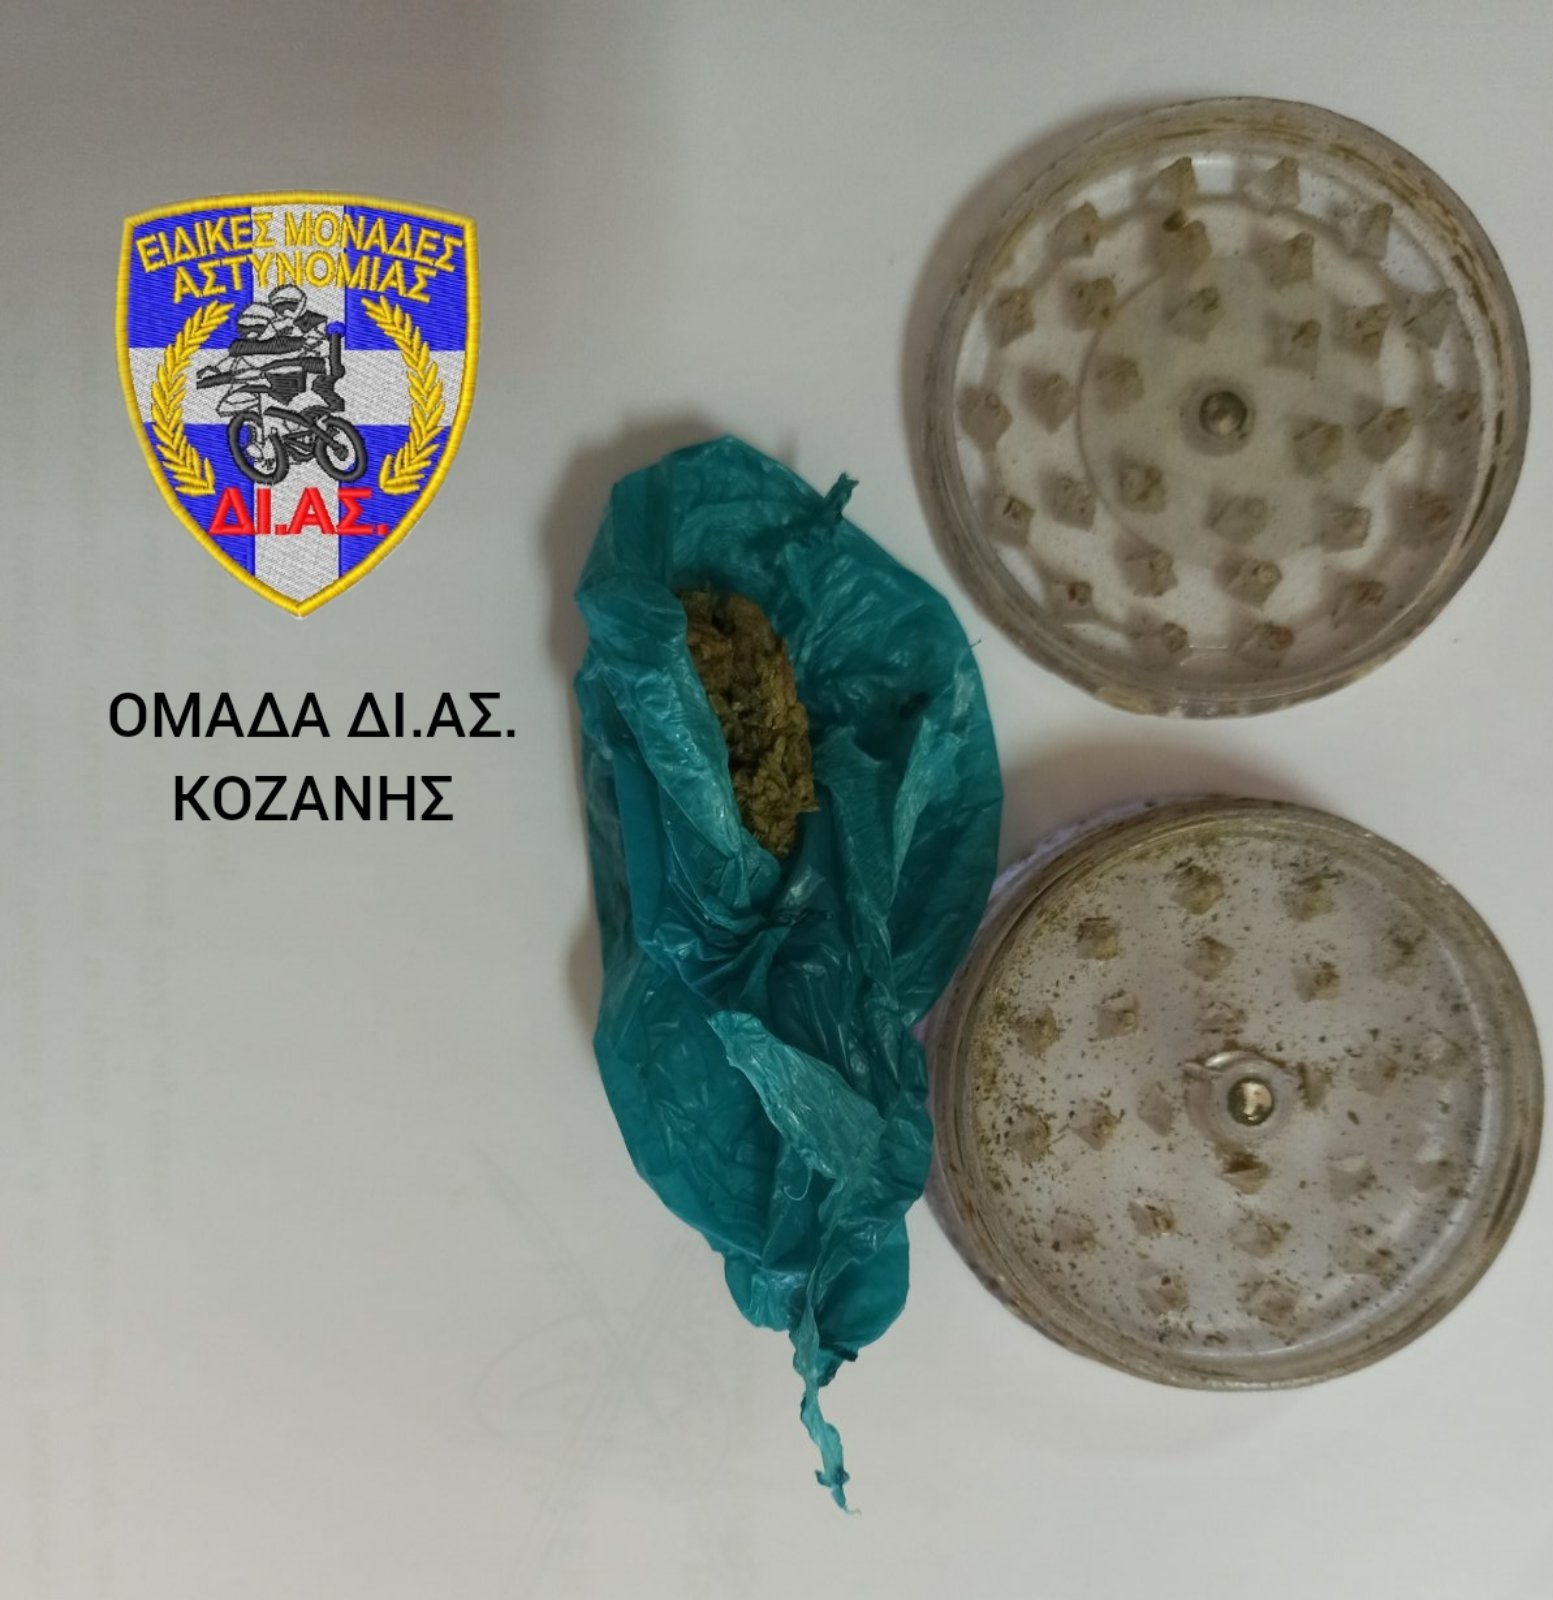 Συνελήφθησαν δύο άτομα στην Κοζάνη για κατοχή ναρκωτικών ουσιών, σε δύο διαφορετικές περιπτώσεις